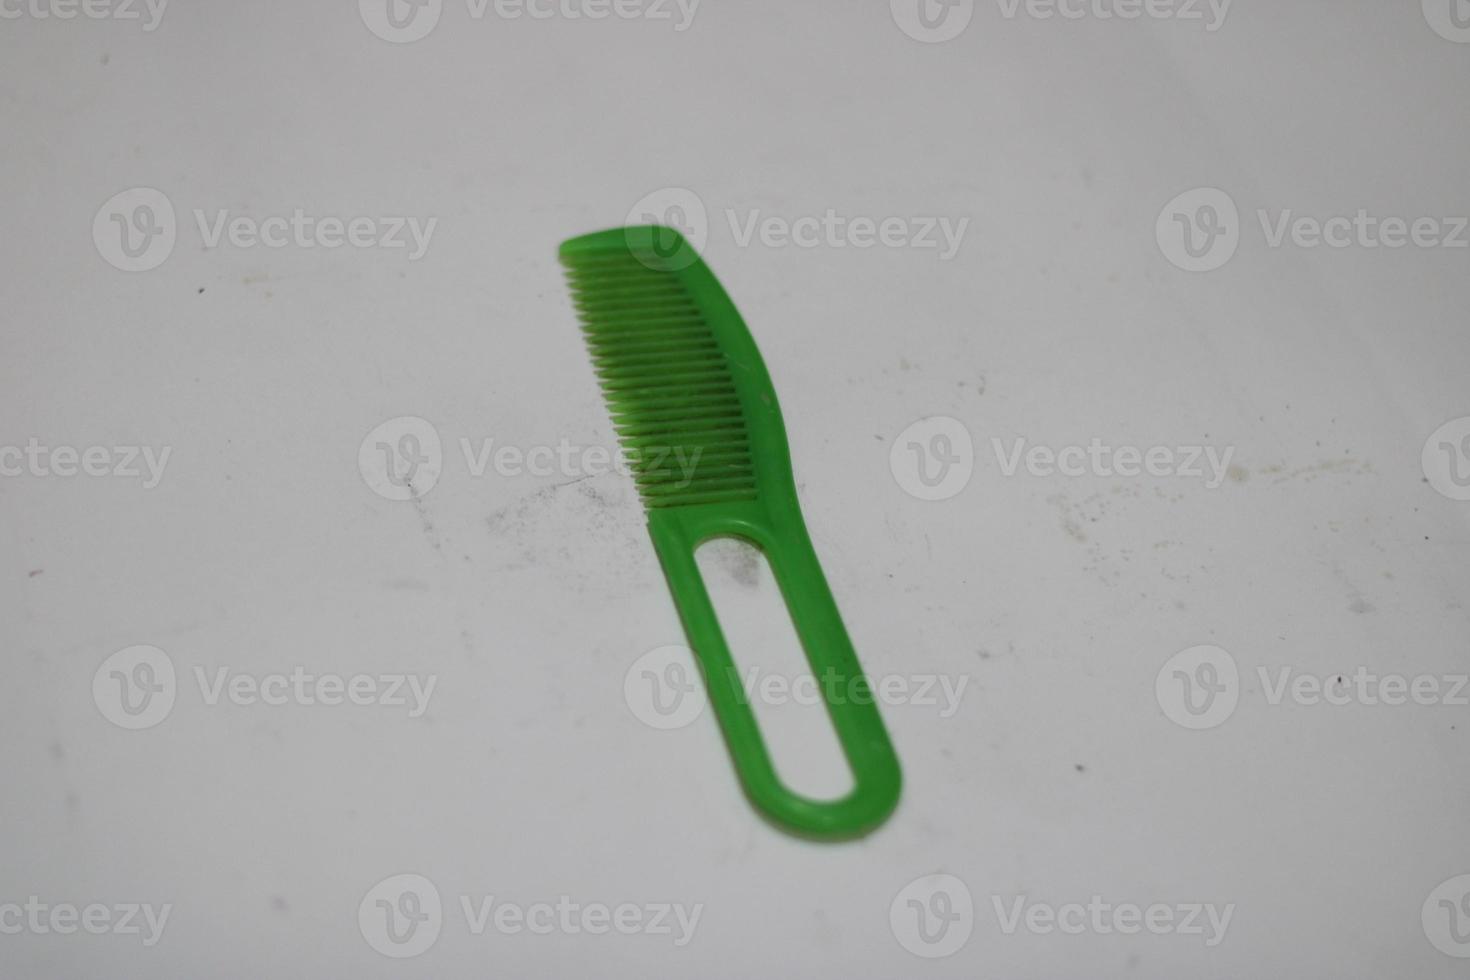 foto van een groen haar- kam gemaakt van plastic met een wit achtergrond